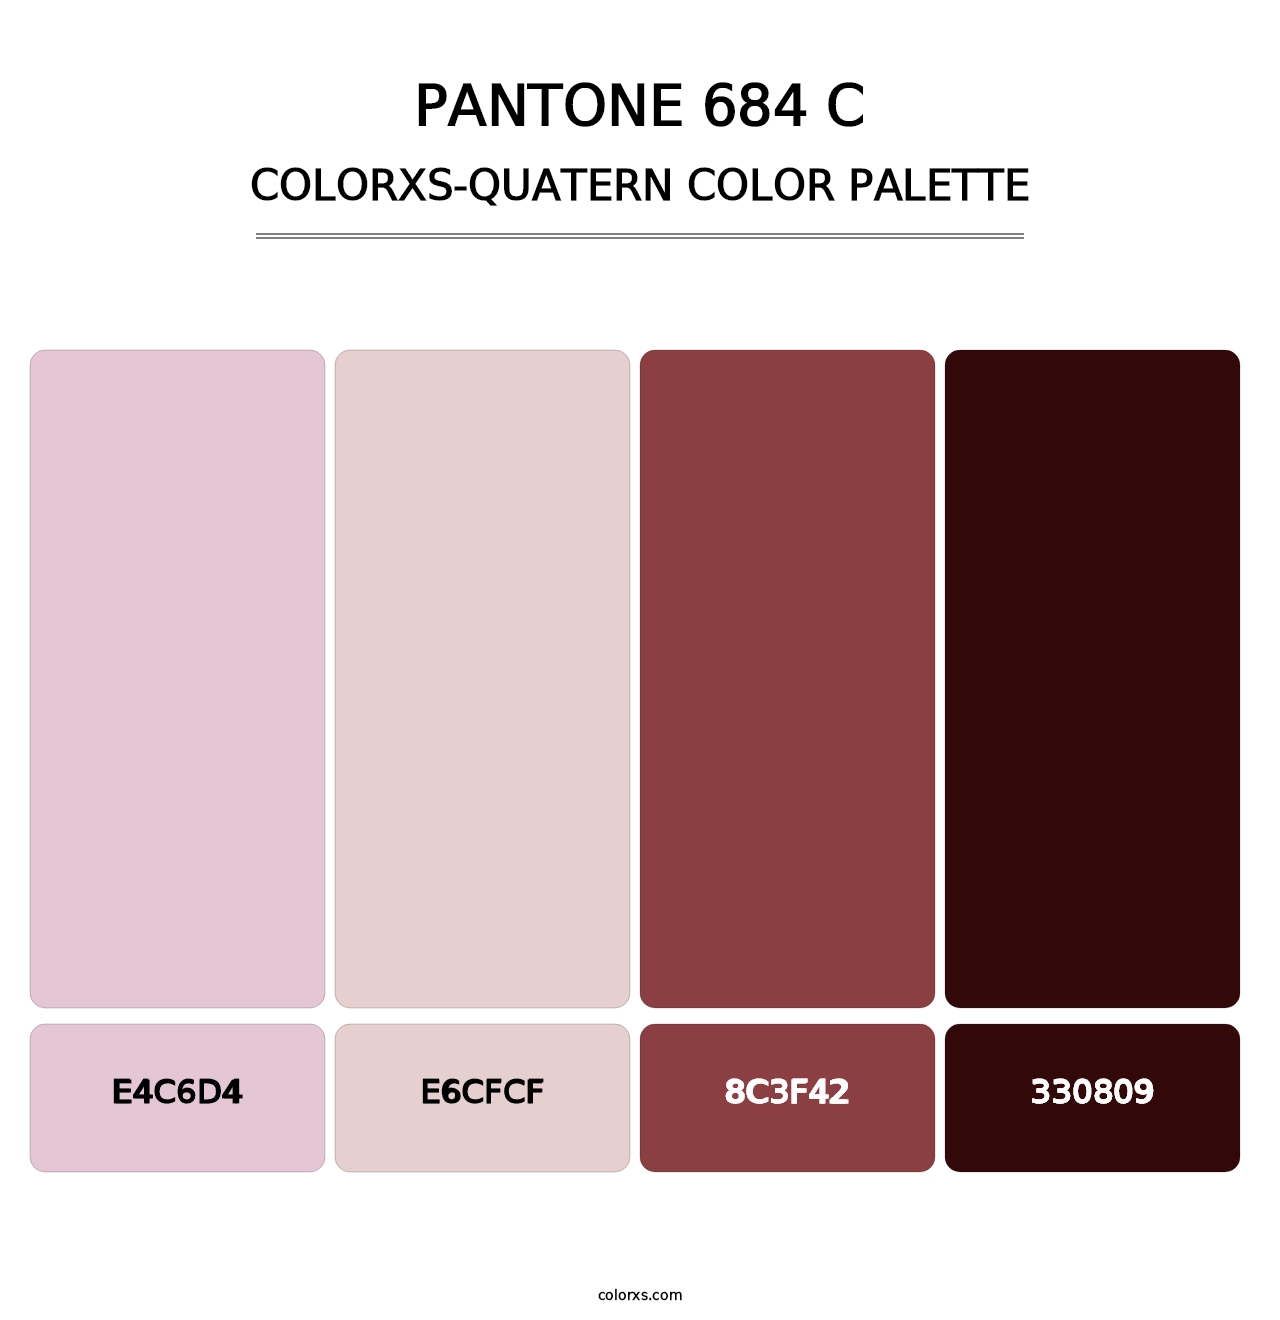 PANTONE 684 C - Colorxs Quatern Palette